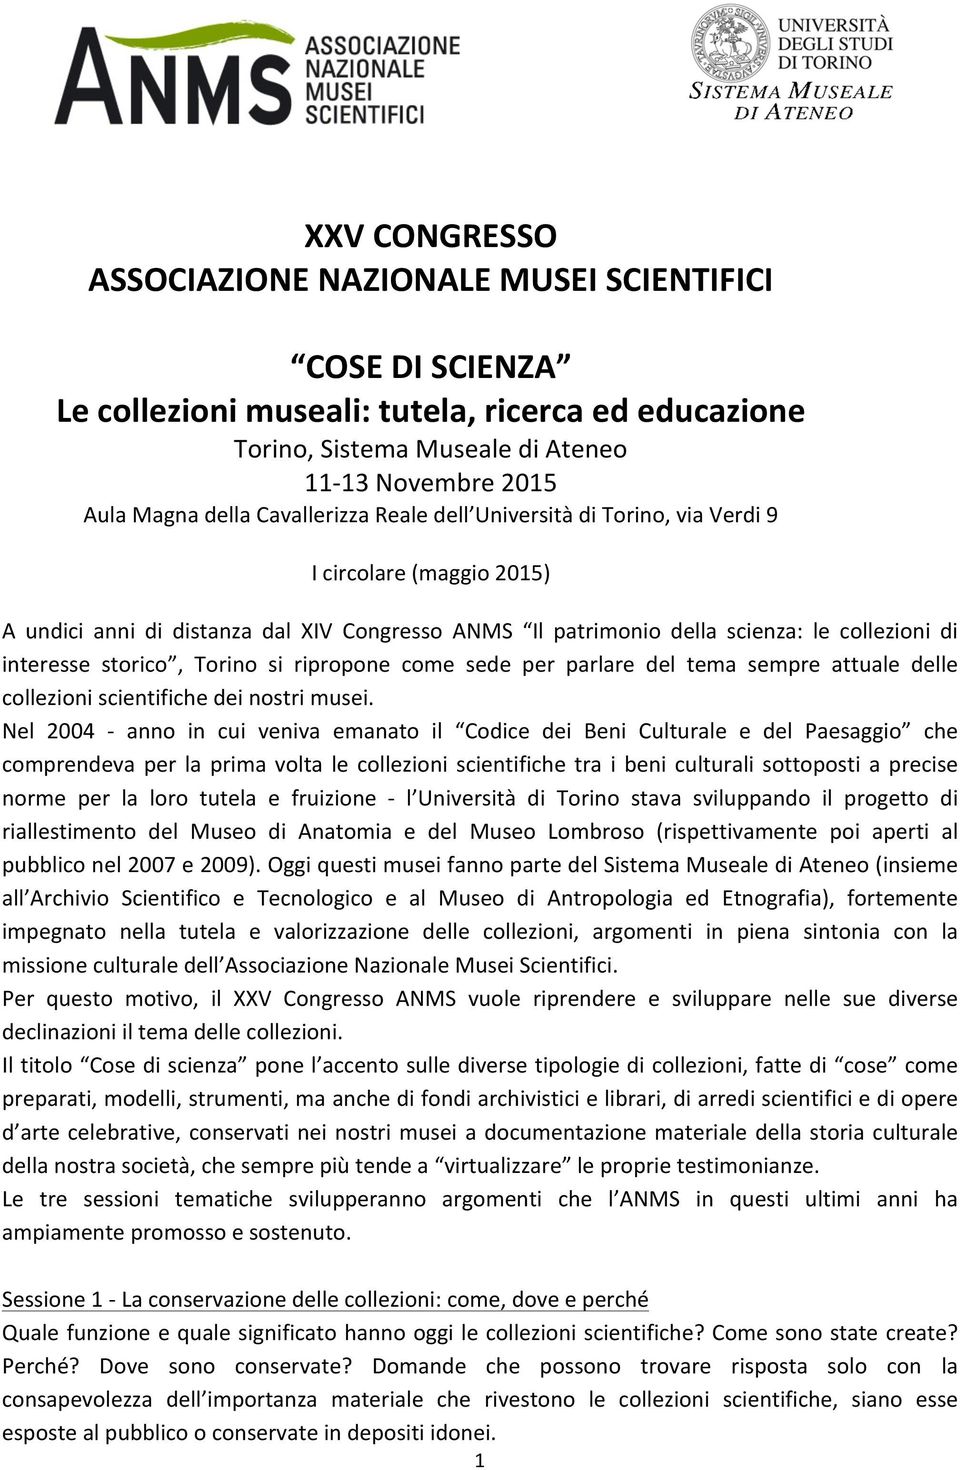 Torino si ripropone come sede per parlare del tema sempre attuale delle collezioni scientifiche dei nostri musei.